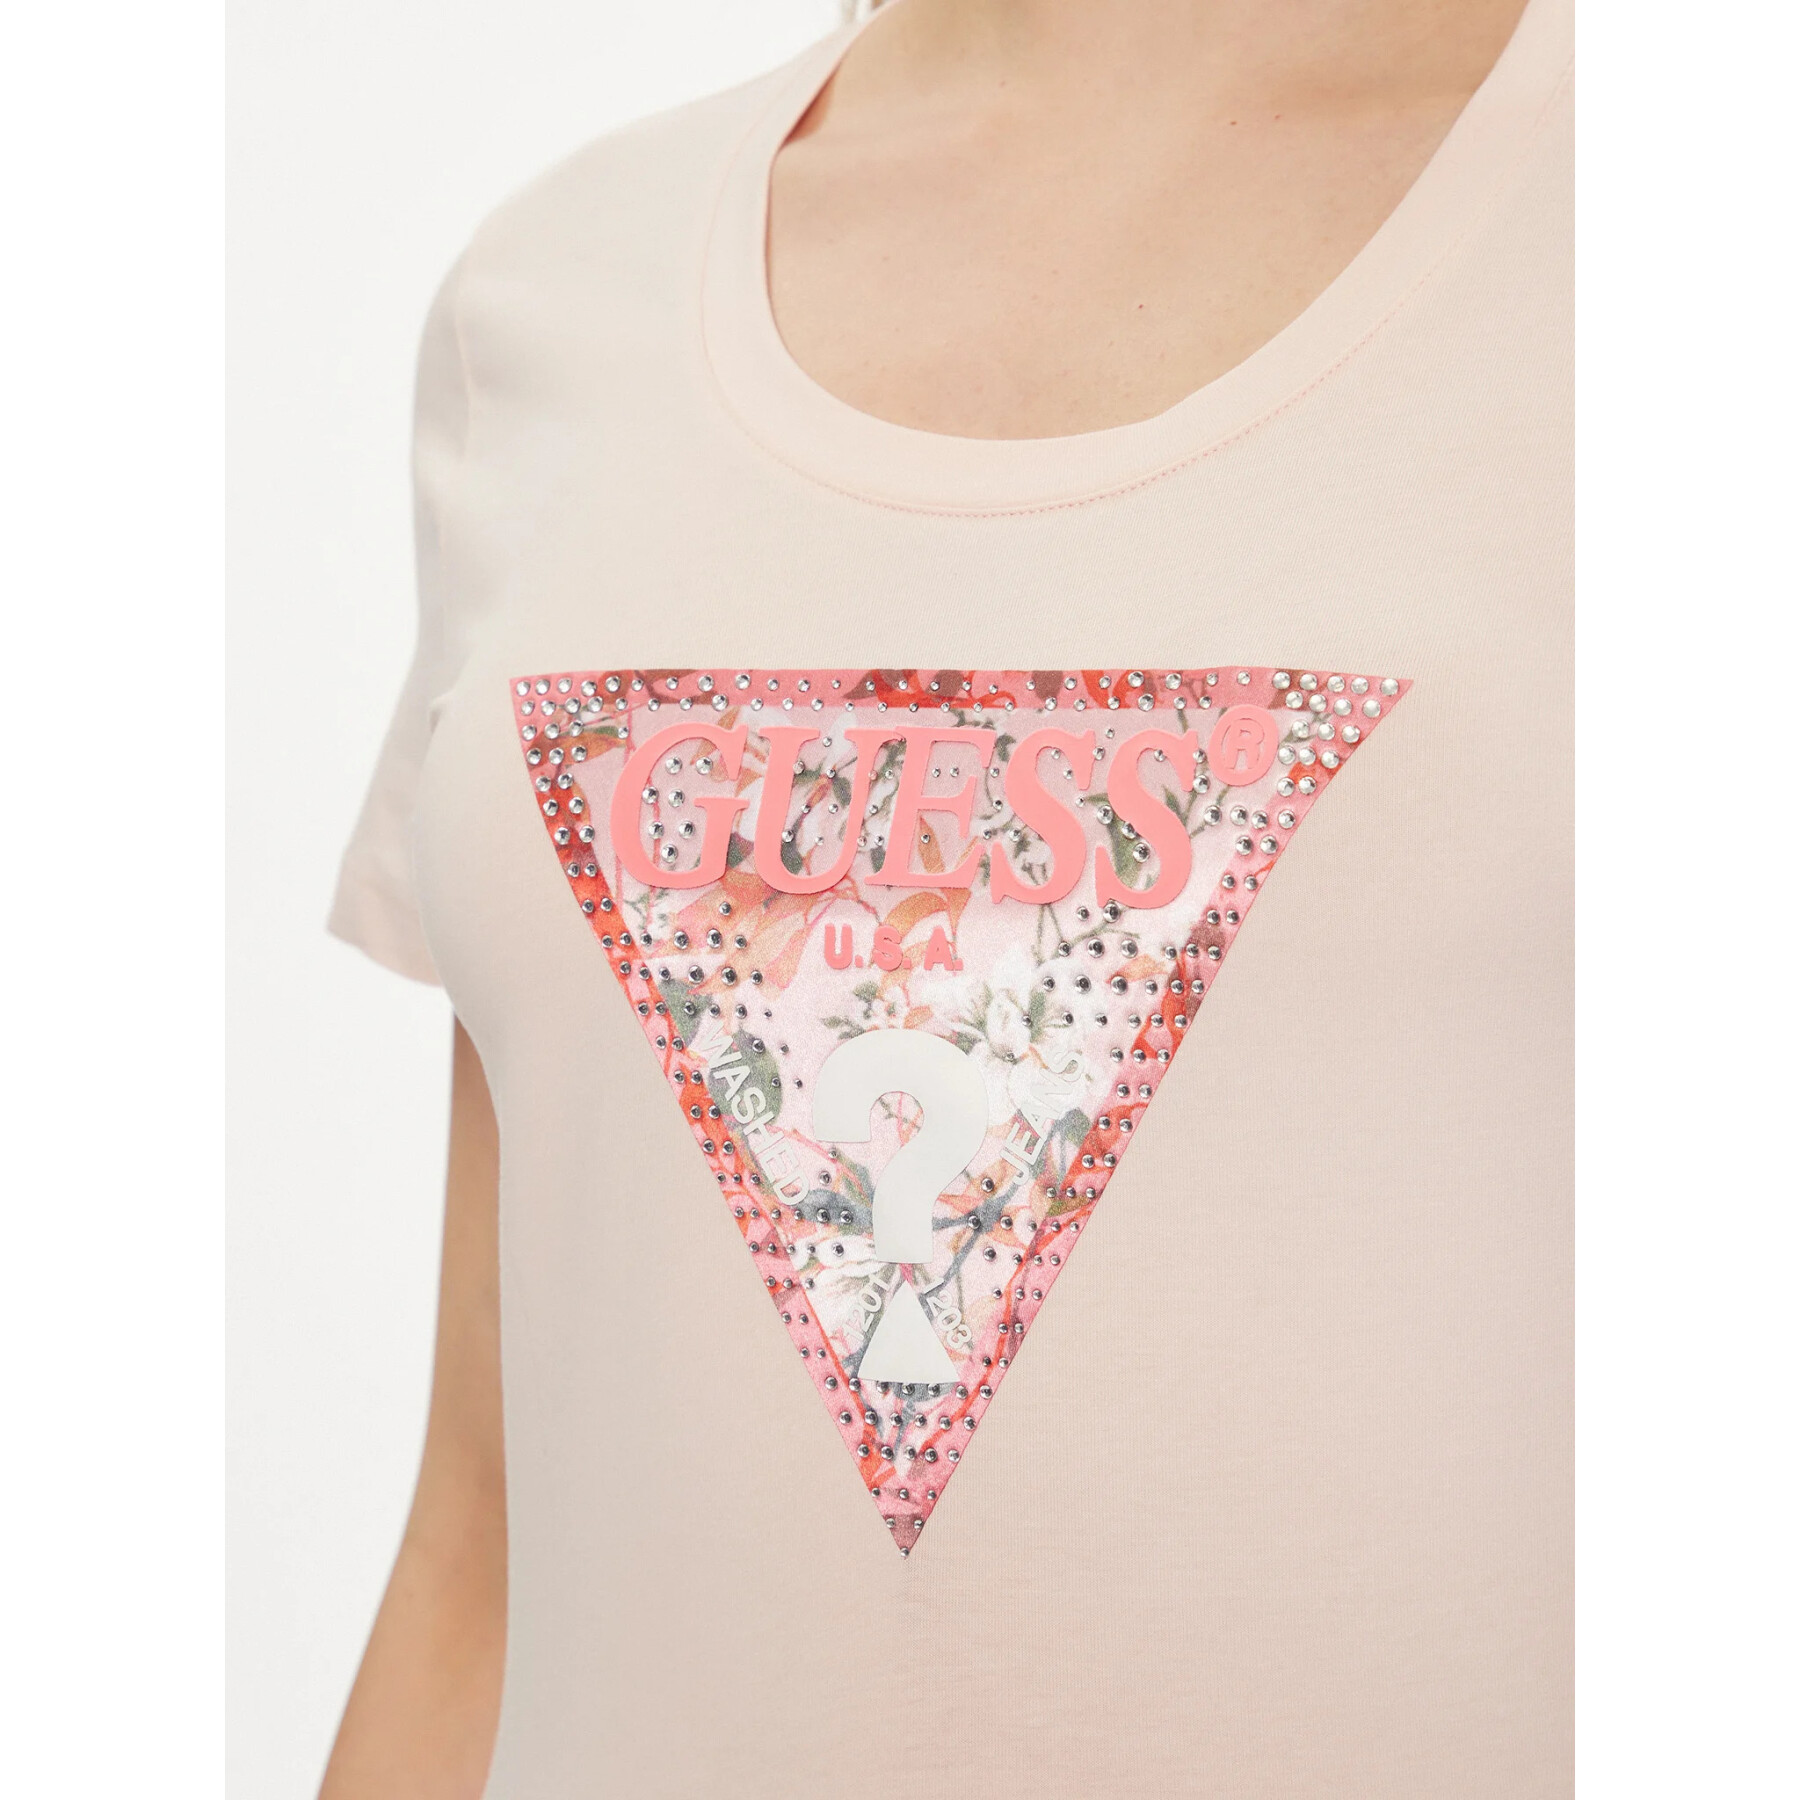 Women's T-shirt Guess Triangle